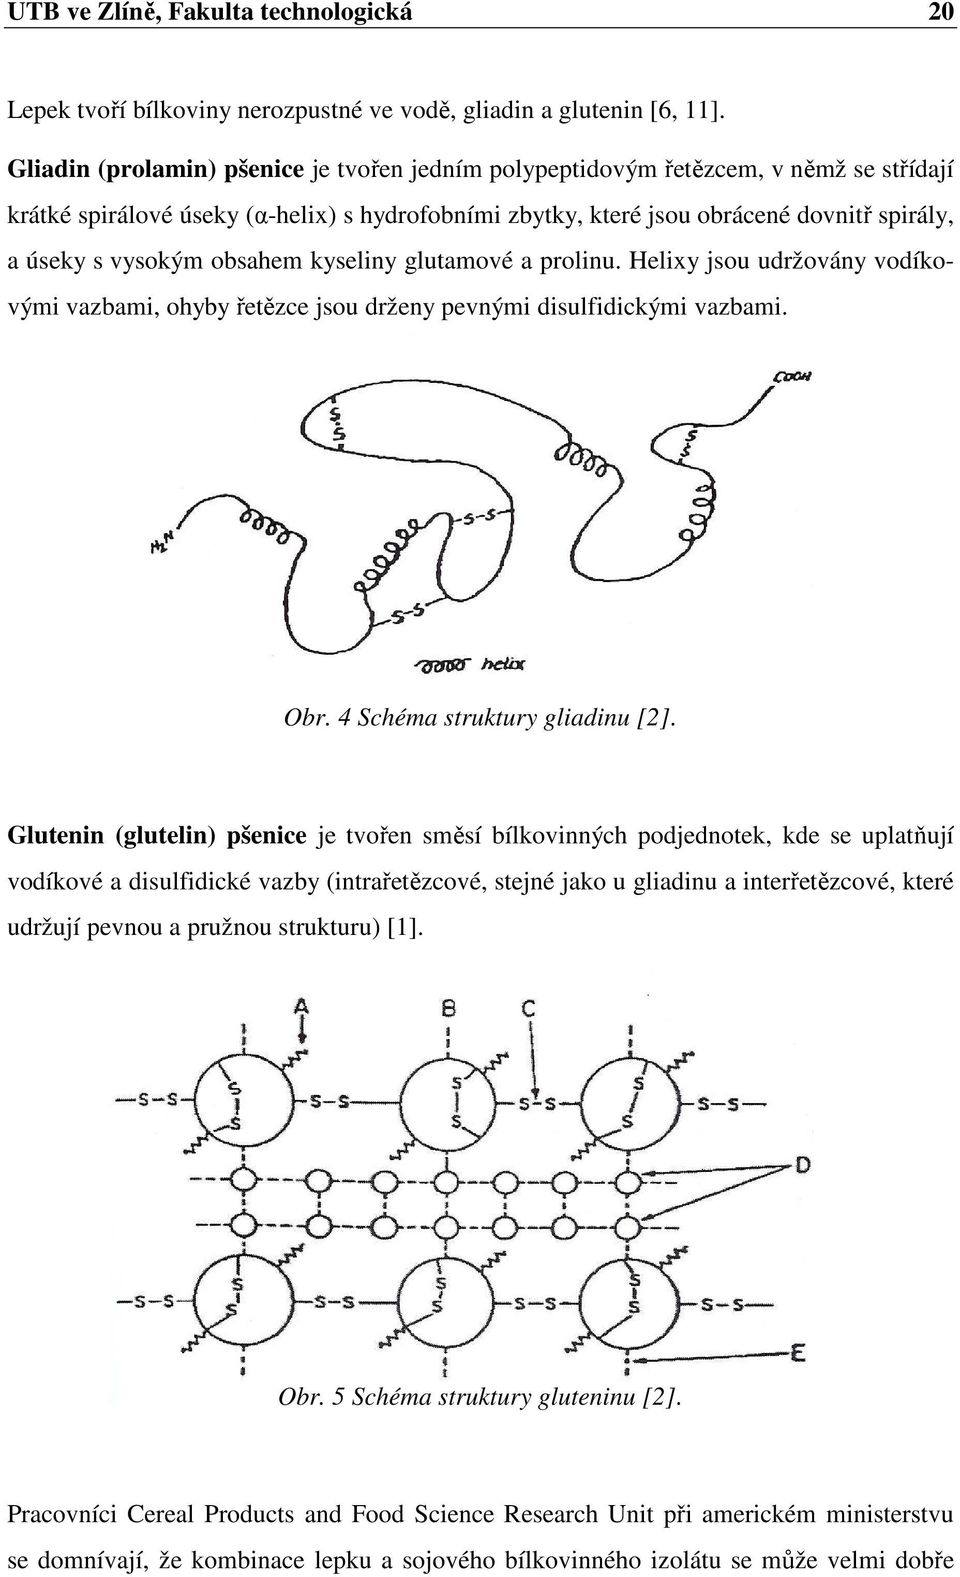 obsahem kyseliny glutamové a prolinu. Helixy jsou udržovány vodíkovými vazbami, ohyby řetězce jsou drženy pevnými disulfidickými vazbami. Obr. 4 Schéma struktury gliadinu [2].